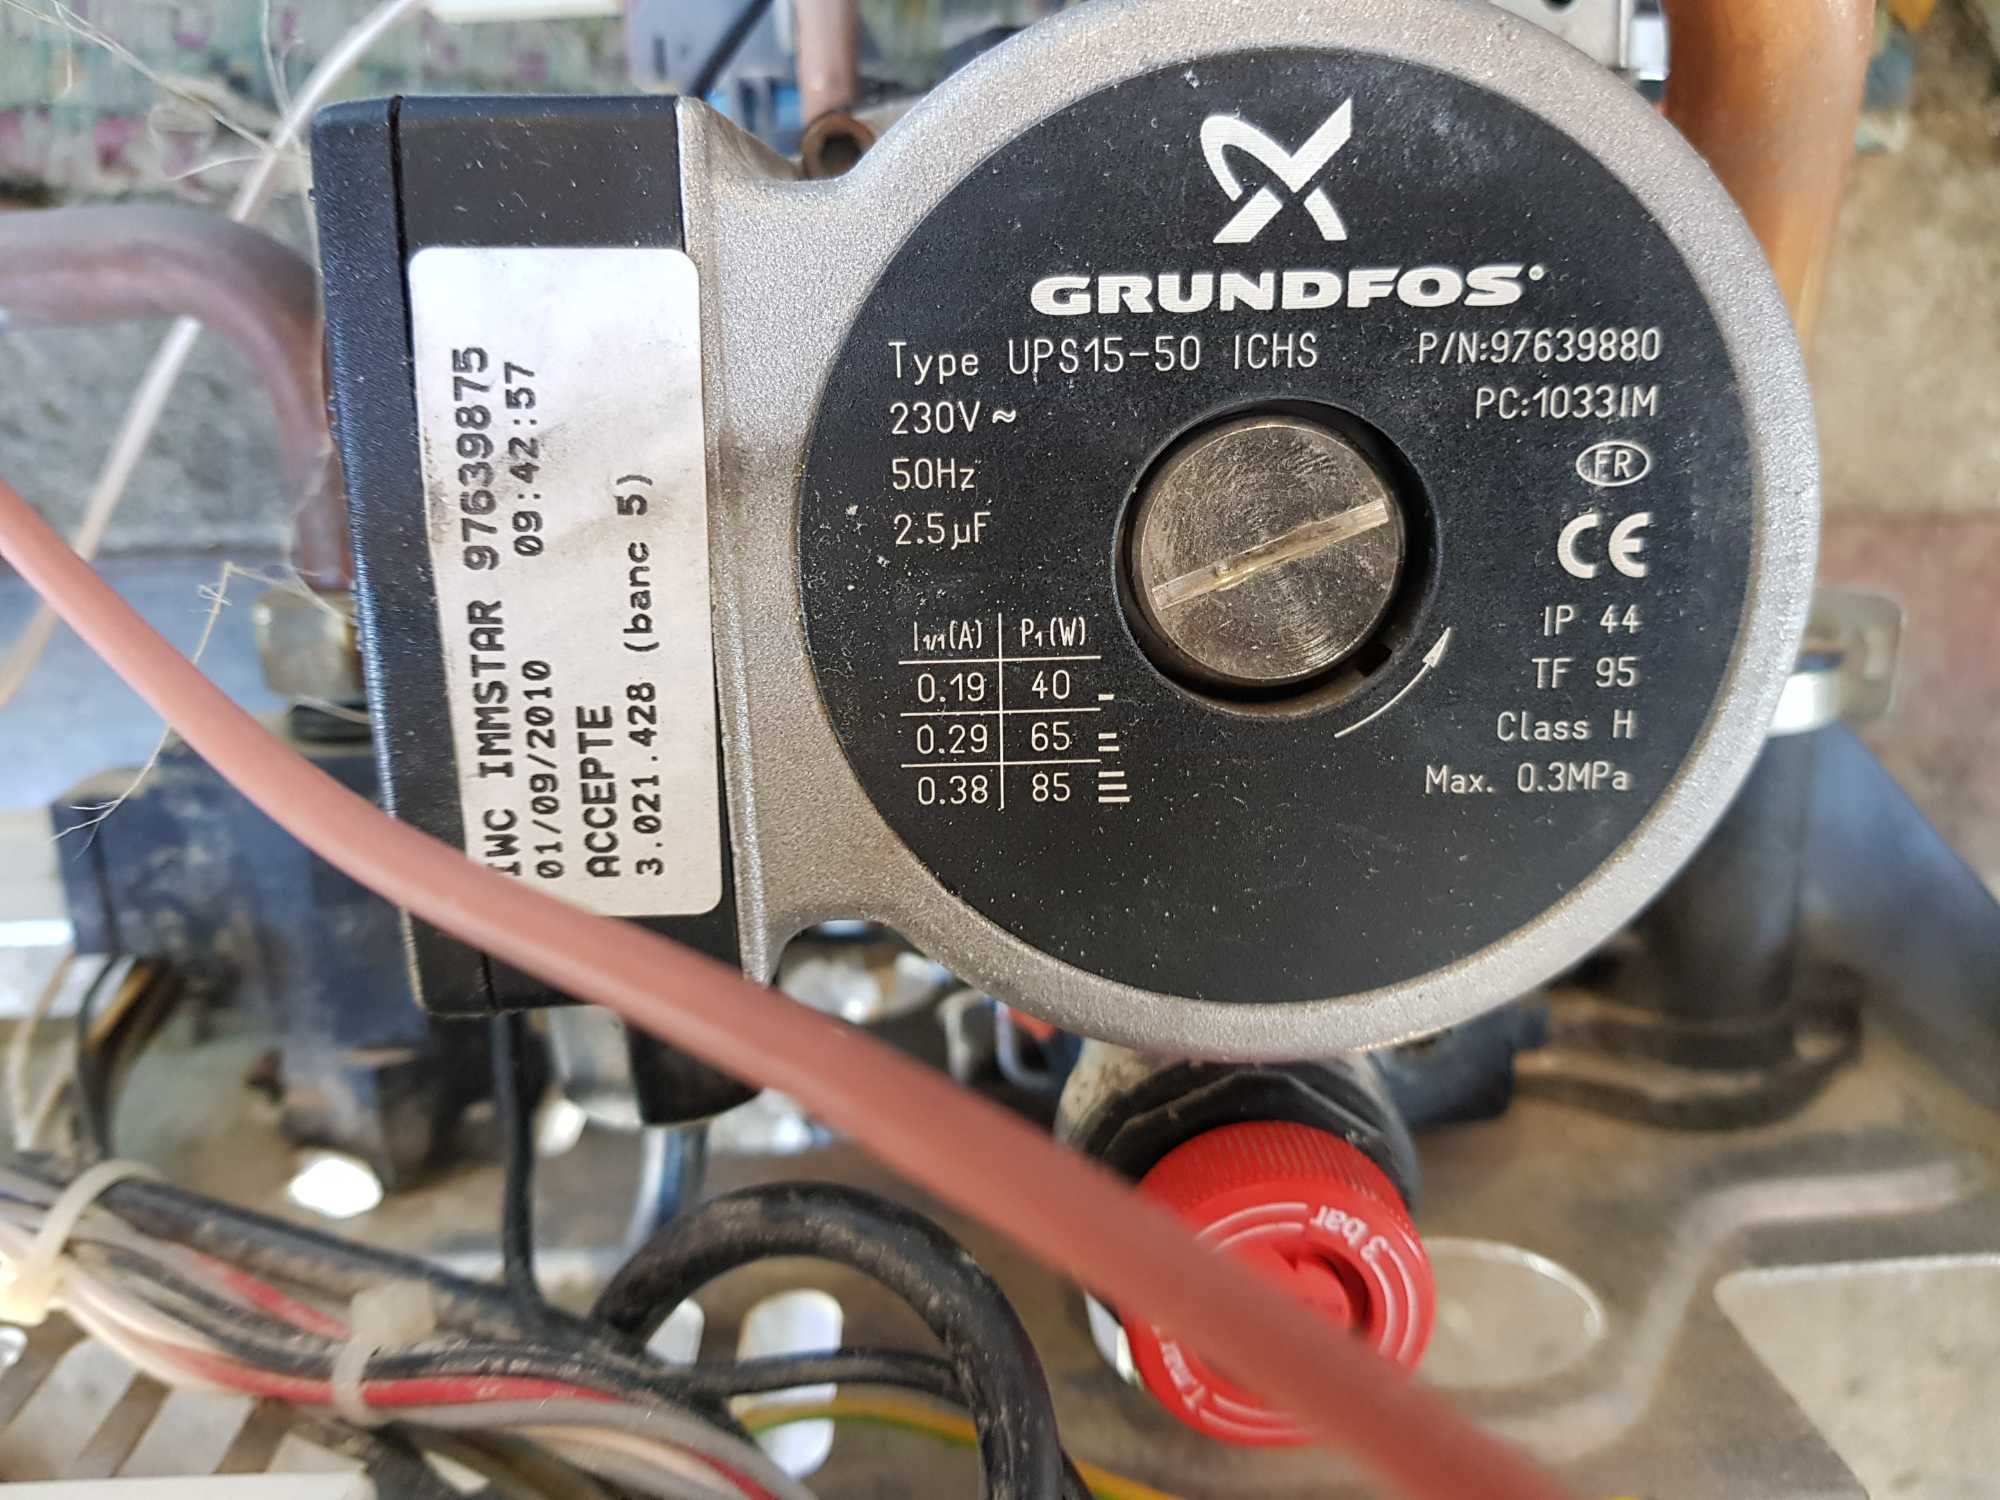 Pompa Grundfos do pieca gazowego i centralnego - zamienniki